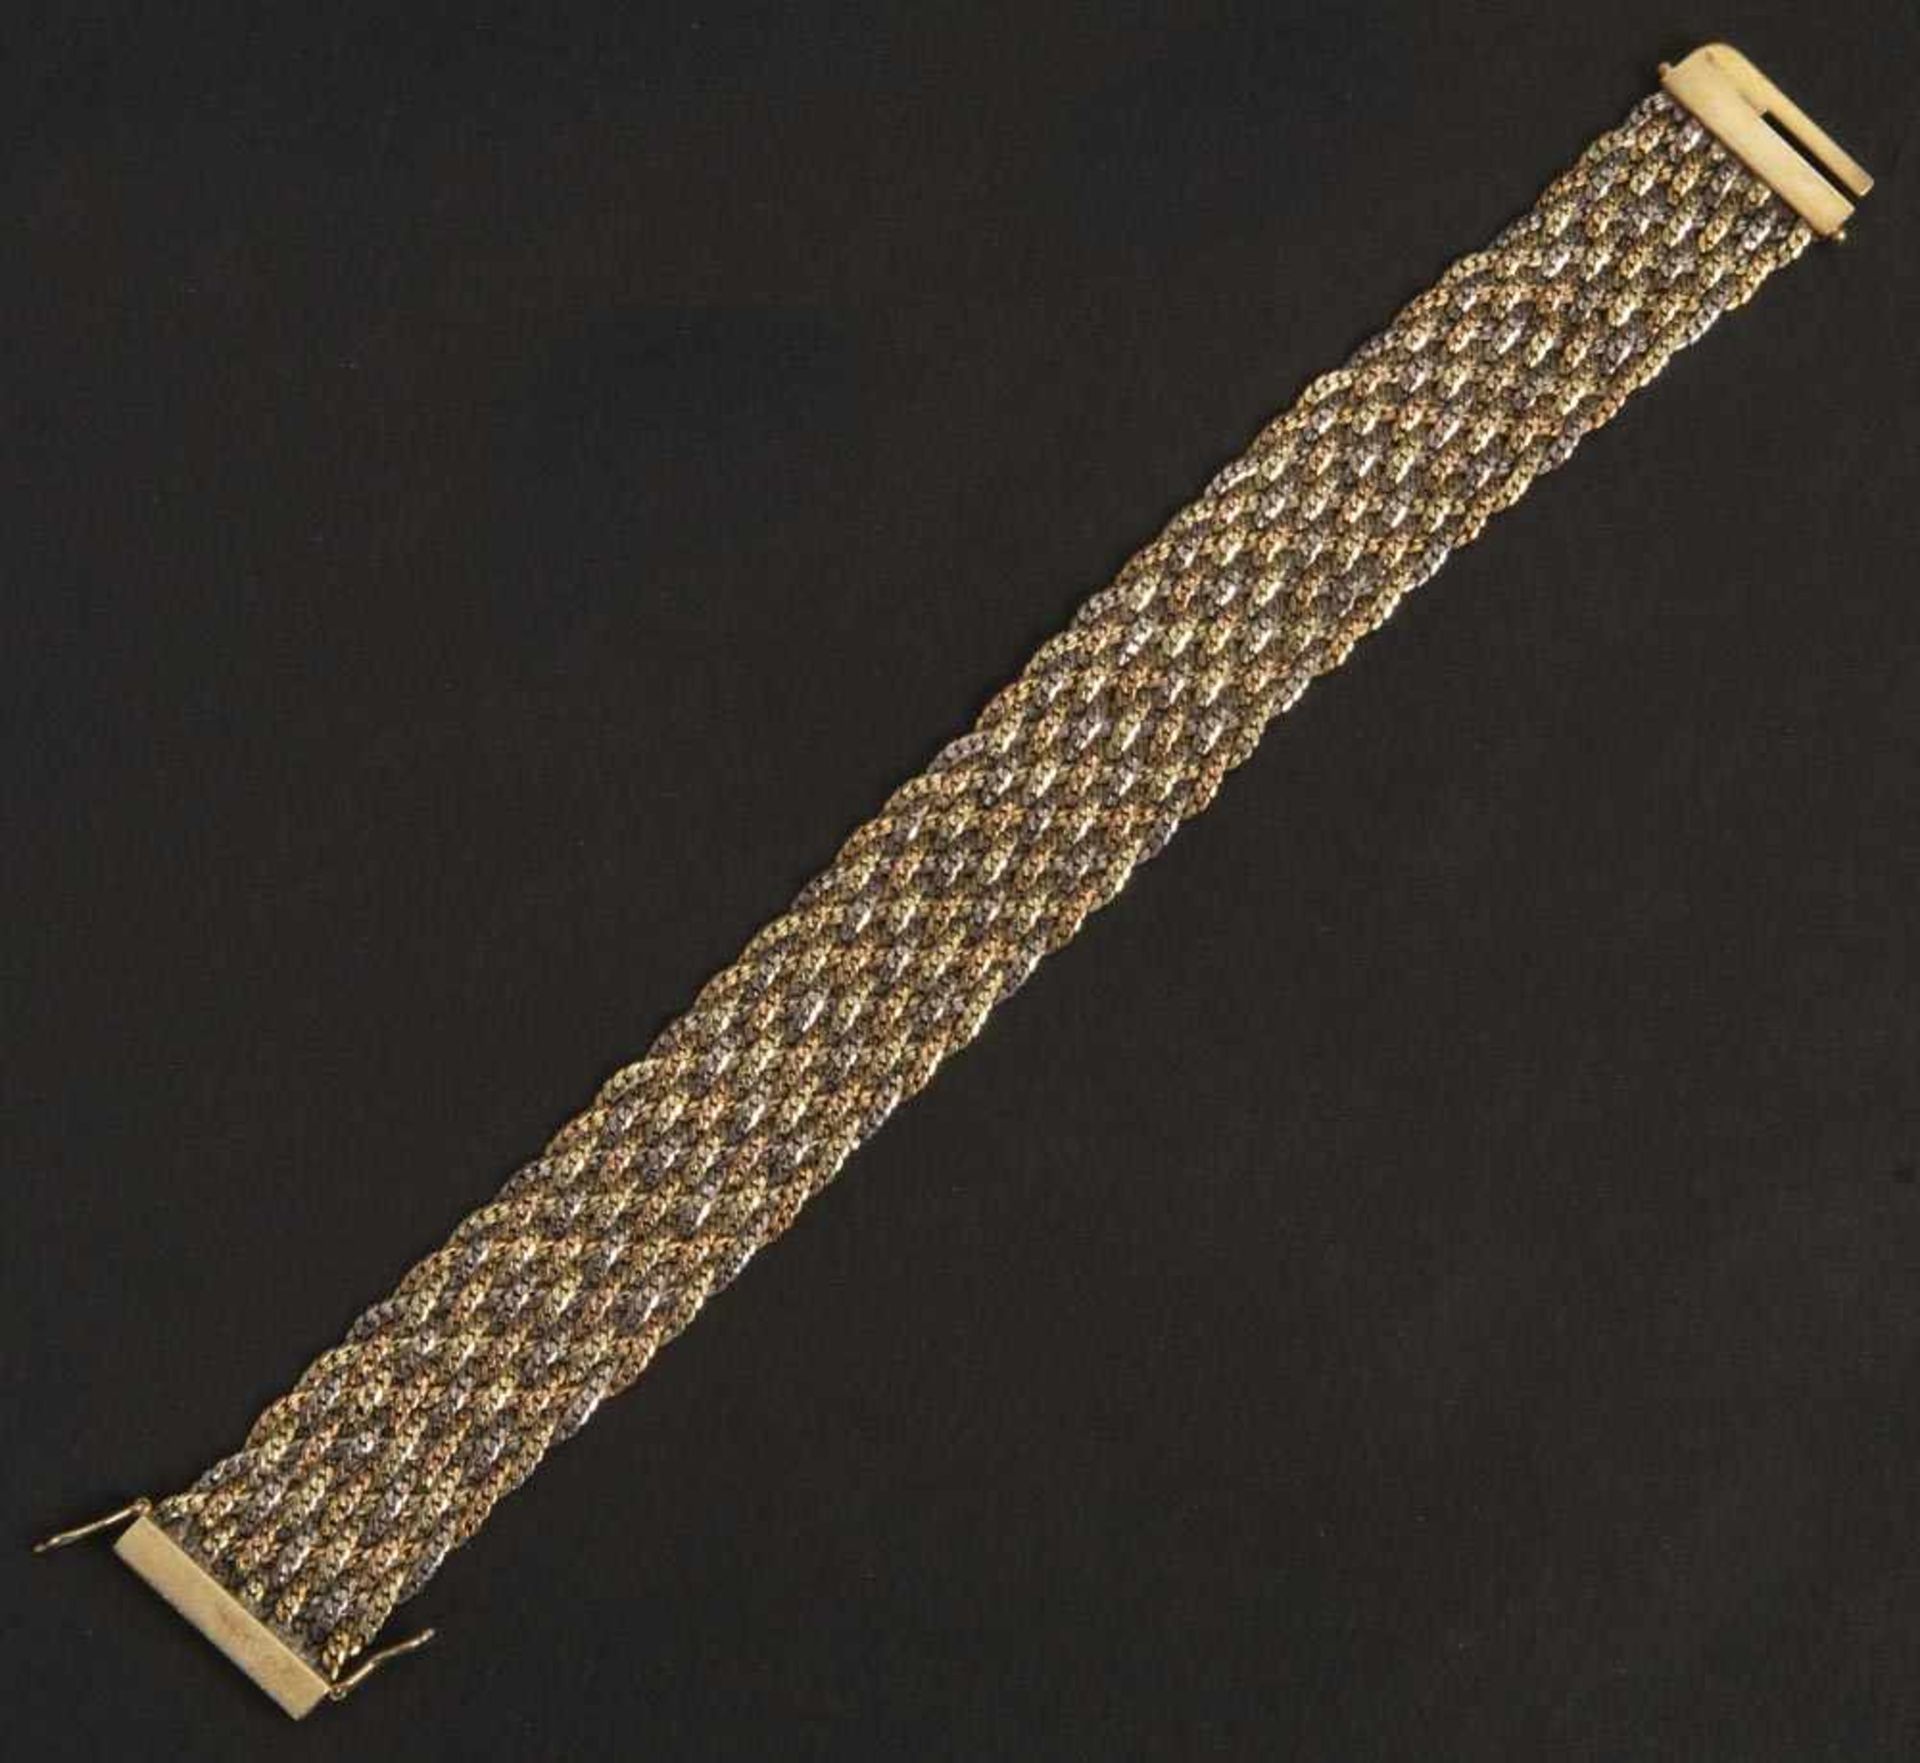 Armband. 14 ct Gelb-, Rot- und Weißgold, ca. 41 g, L=19,5 cm.Armband. 14 ct Gelb-, Rot- und